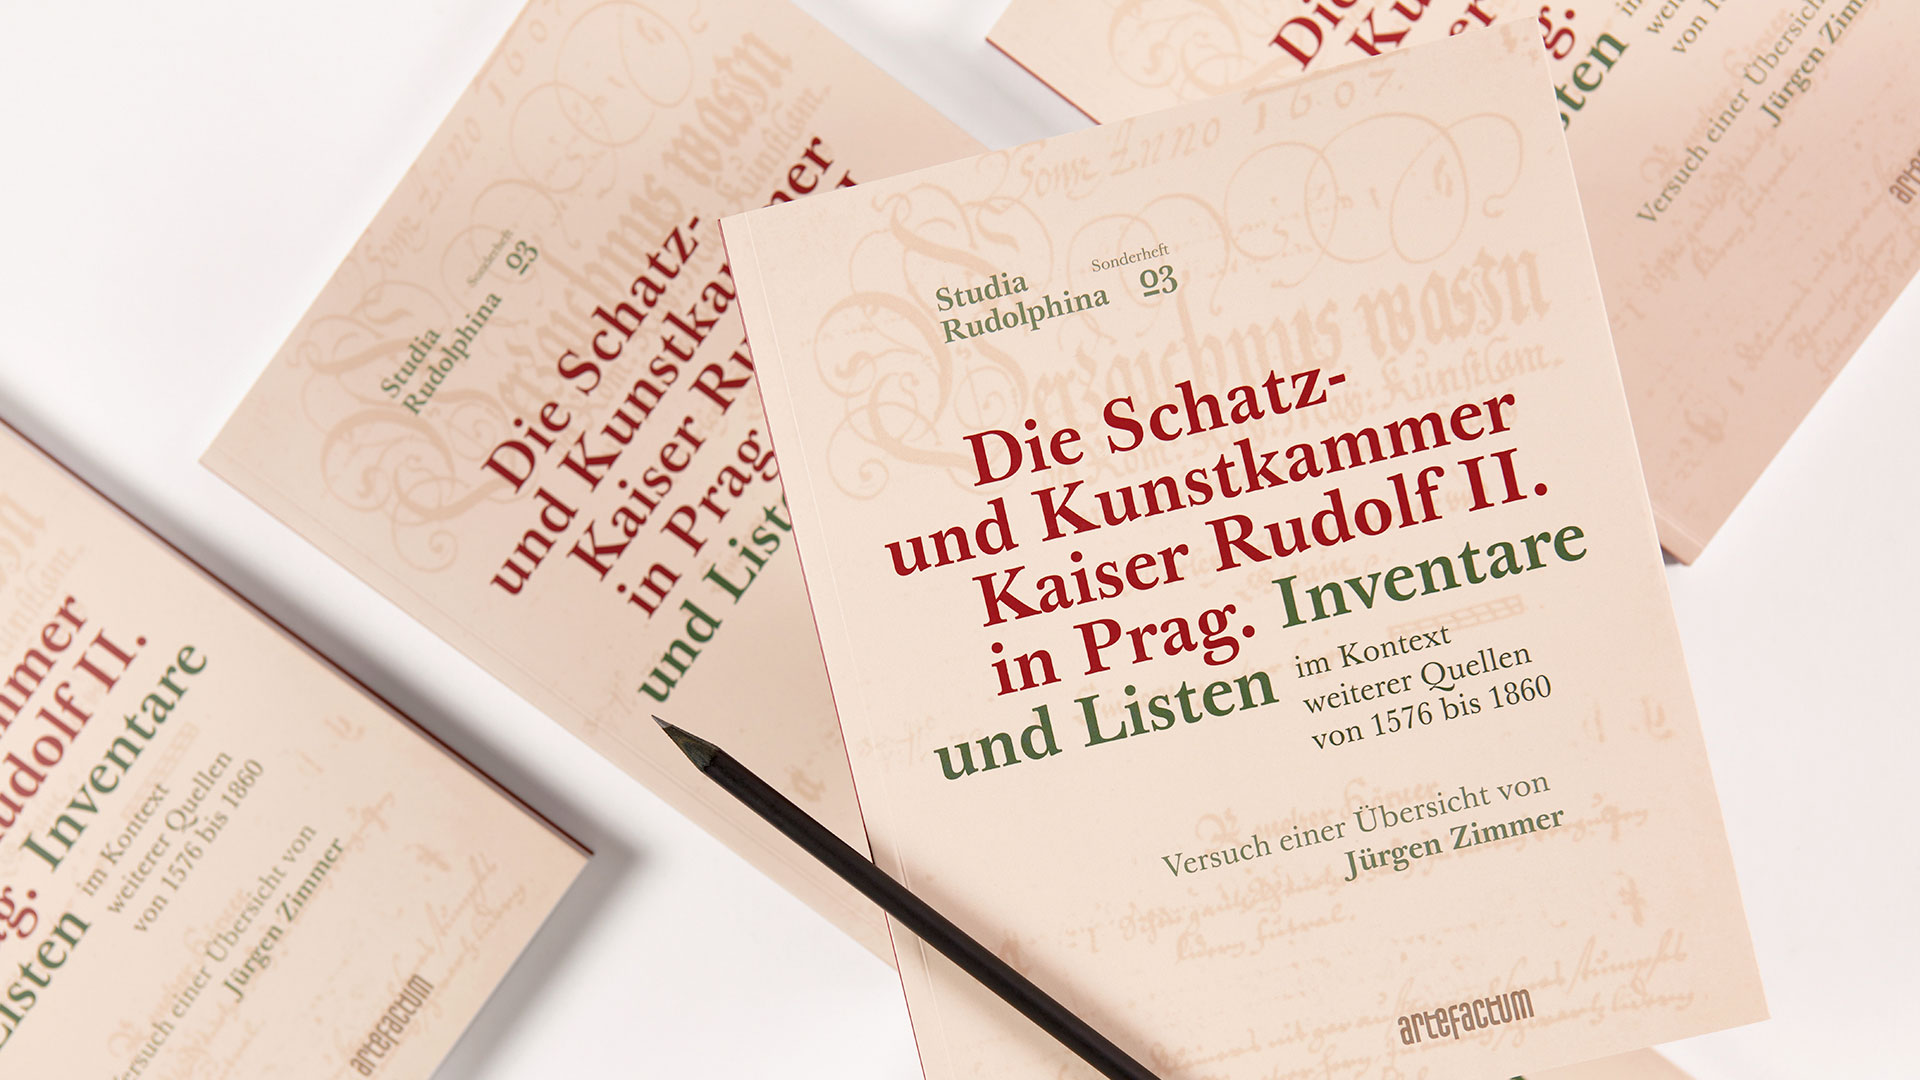 Die Schatz- und Kunstkammer Kaiser Rudolf II. in Prag: Inventare und Listen im Kontext weiterer Quellen von 1576 bis 1860